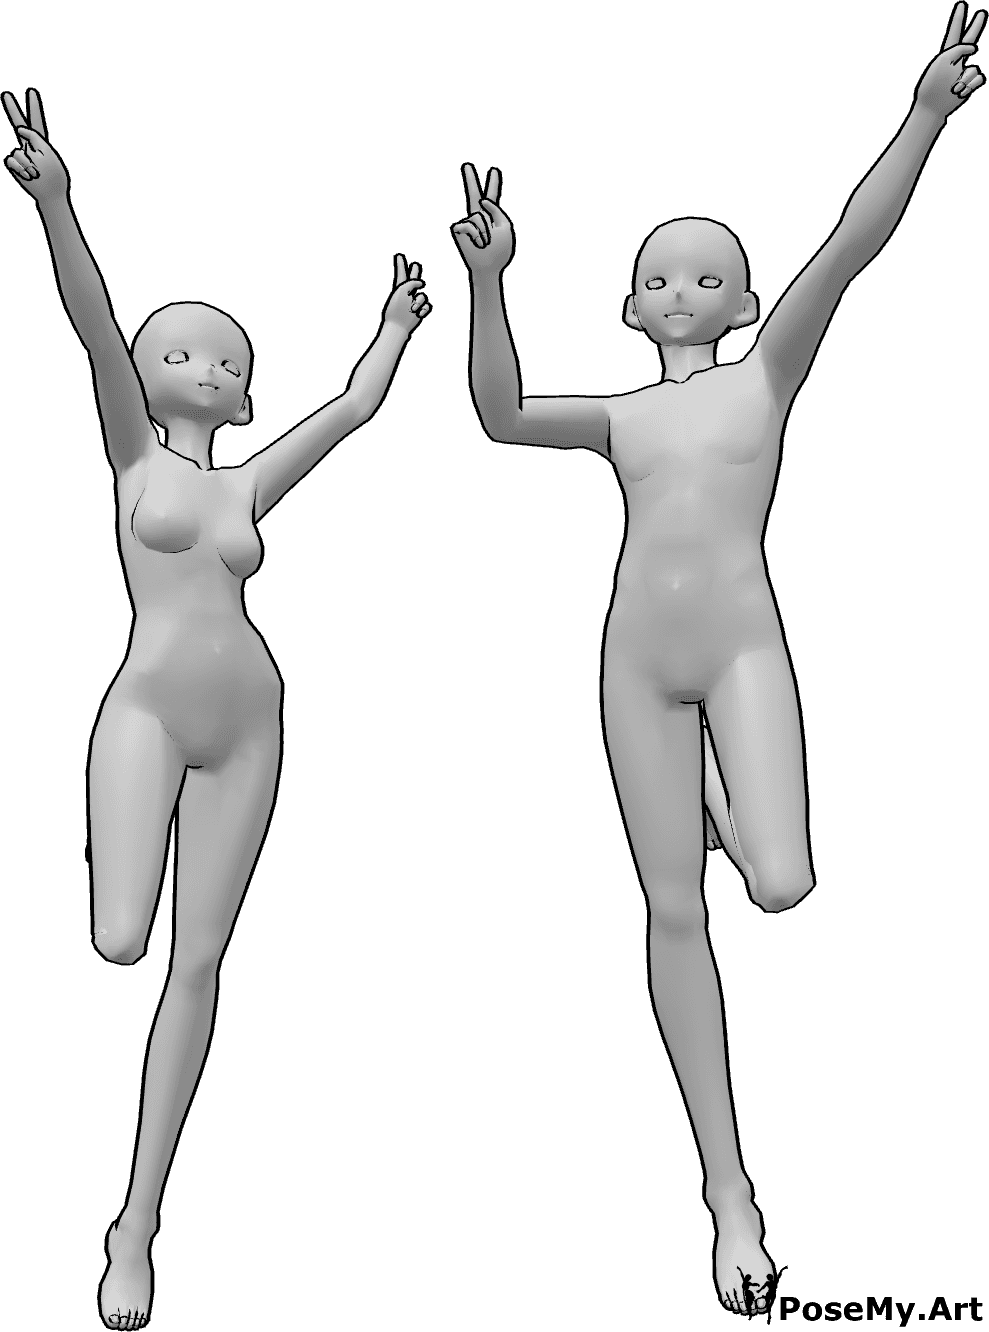 Referência de poses- Pose de paz com salto de anime - Anime feminino e masculino estão a saltar e a mostrar o sinal da paz com as duas mãos